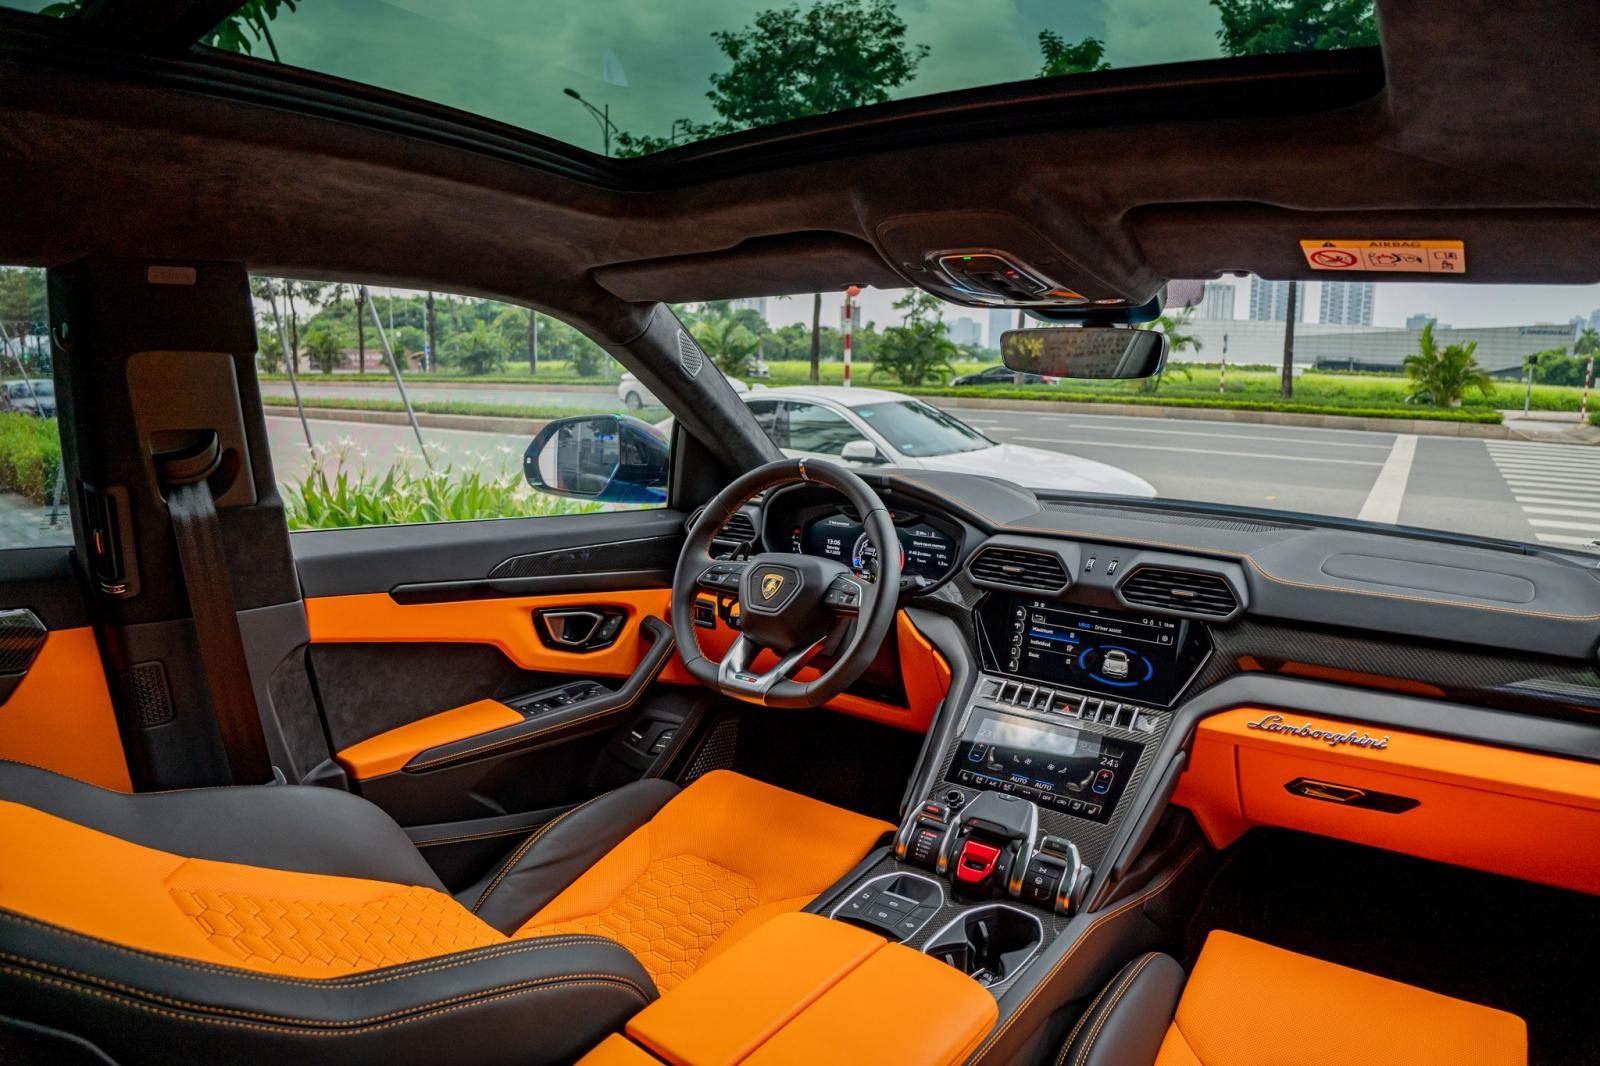 Lamborghini Urus 2021 - Đã ra biển số, odo 200km chưa đi ít nào như xe mới đập hộp - Tiết kiệm hơn 3 tỷ